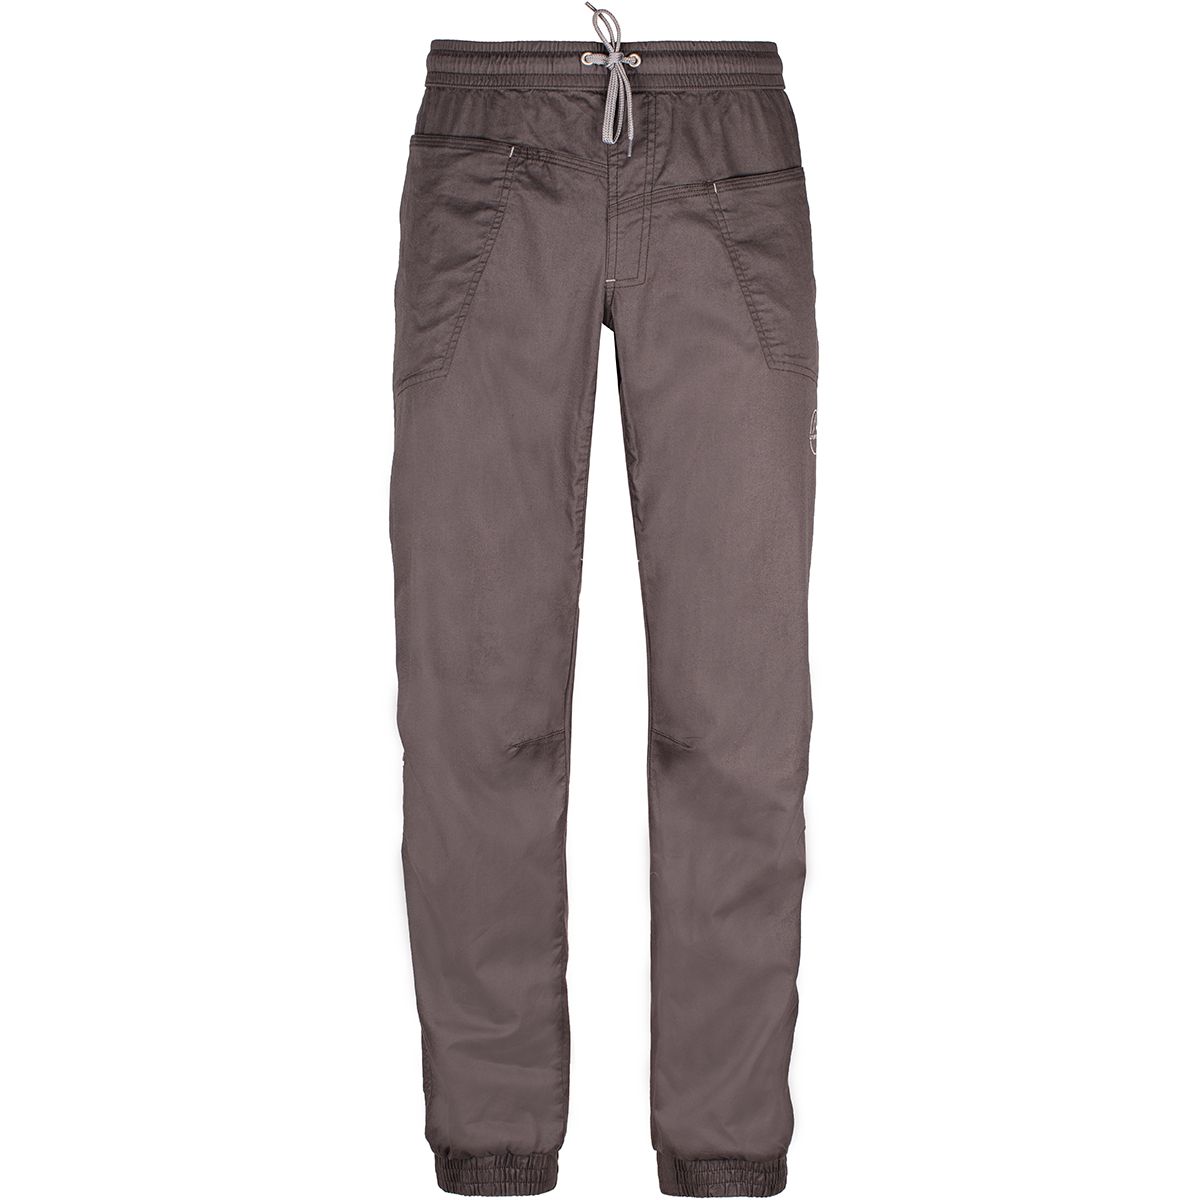 Мужские брюки для активного отдыха и скалолазания La Sportiva Брюки мужские Sandstone Pant